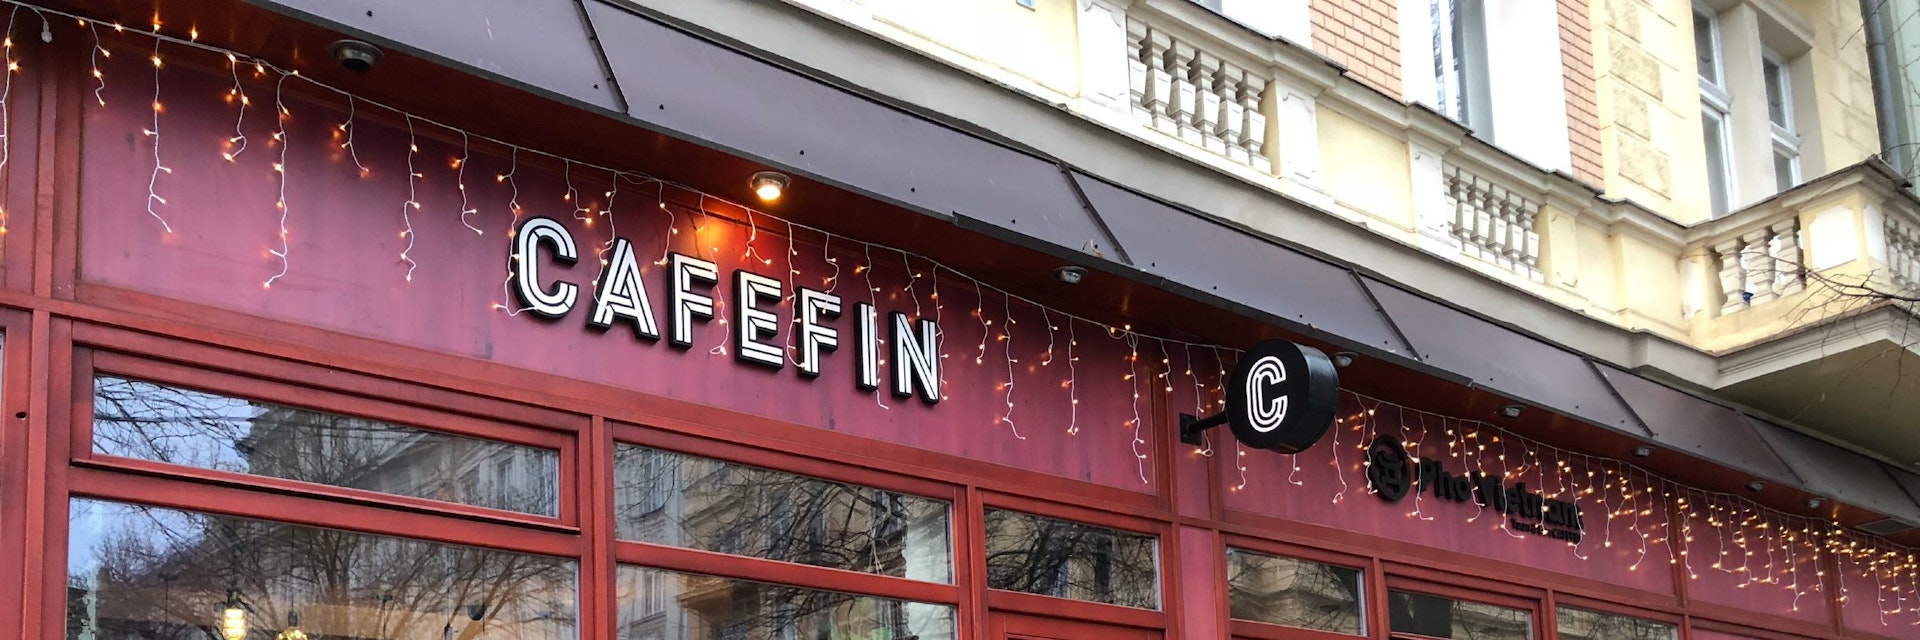 Cafefin exterior